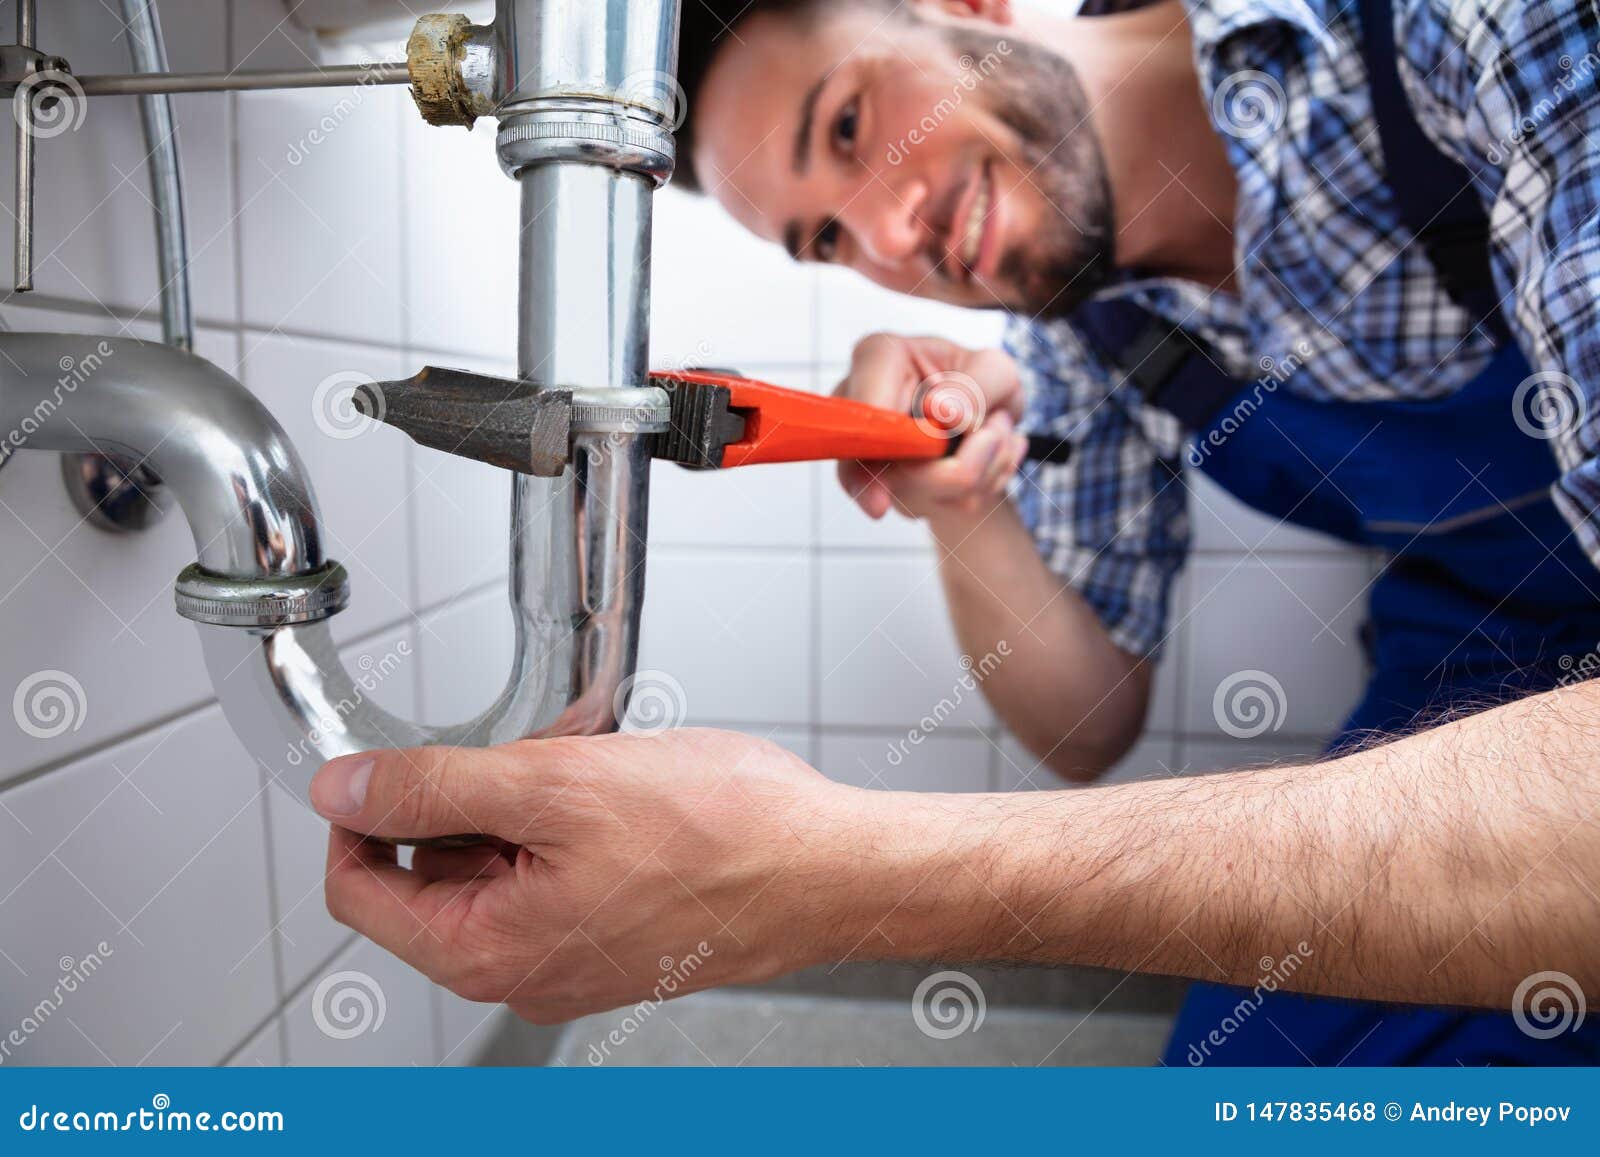 plumber bathroom sink drain